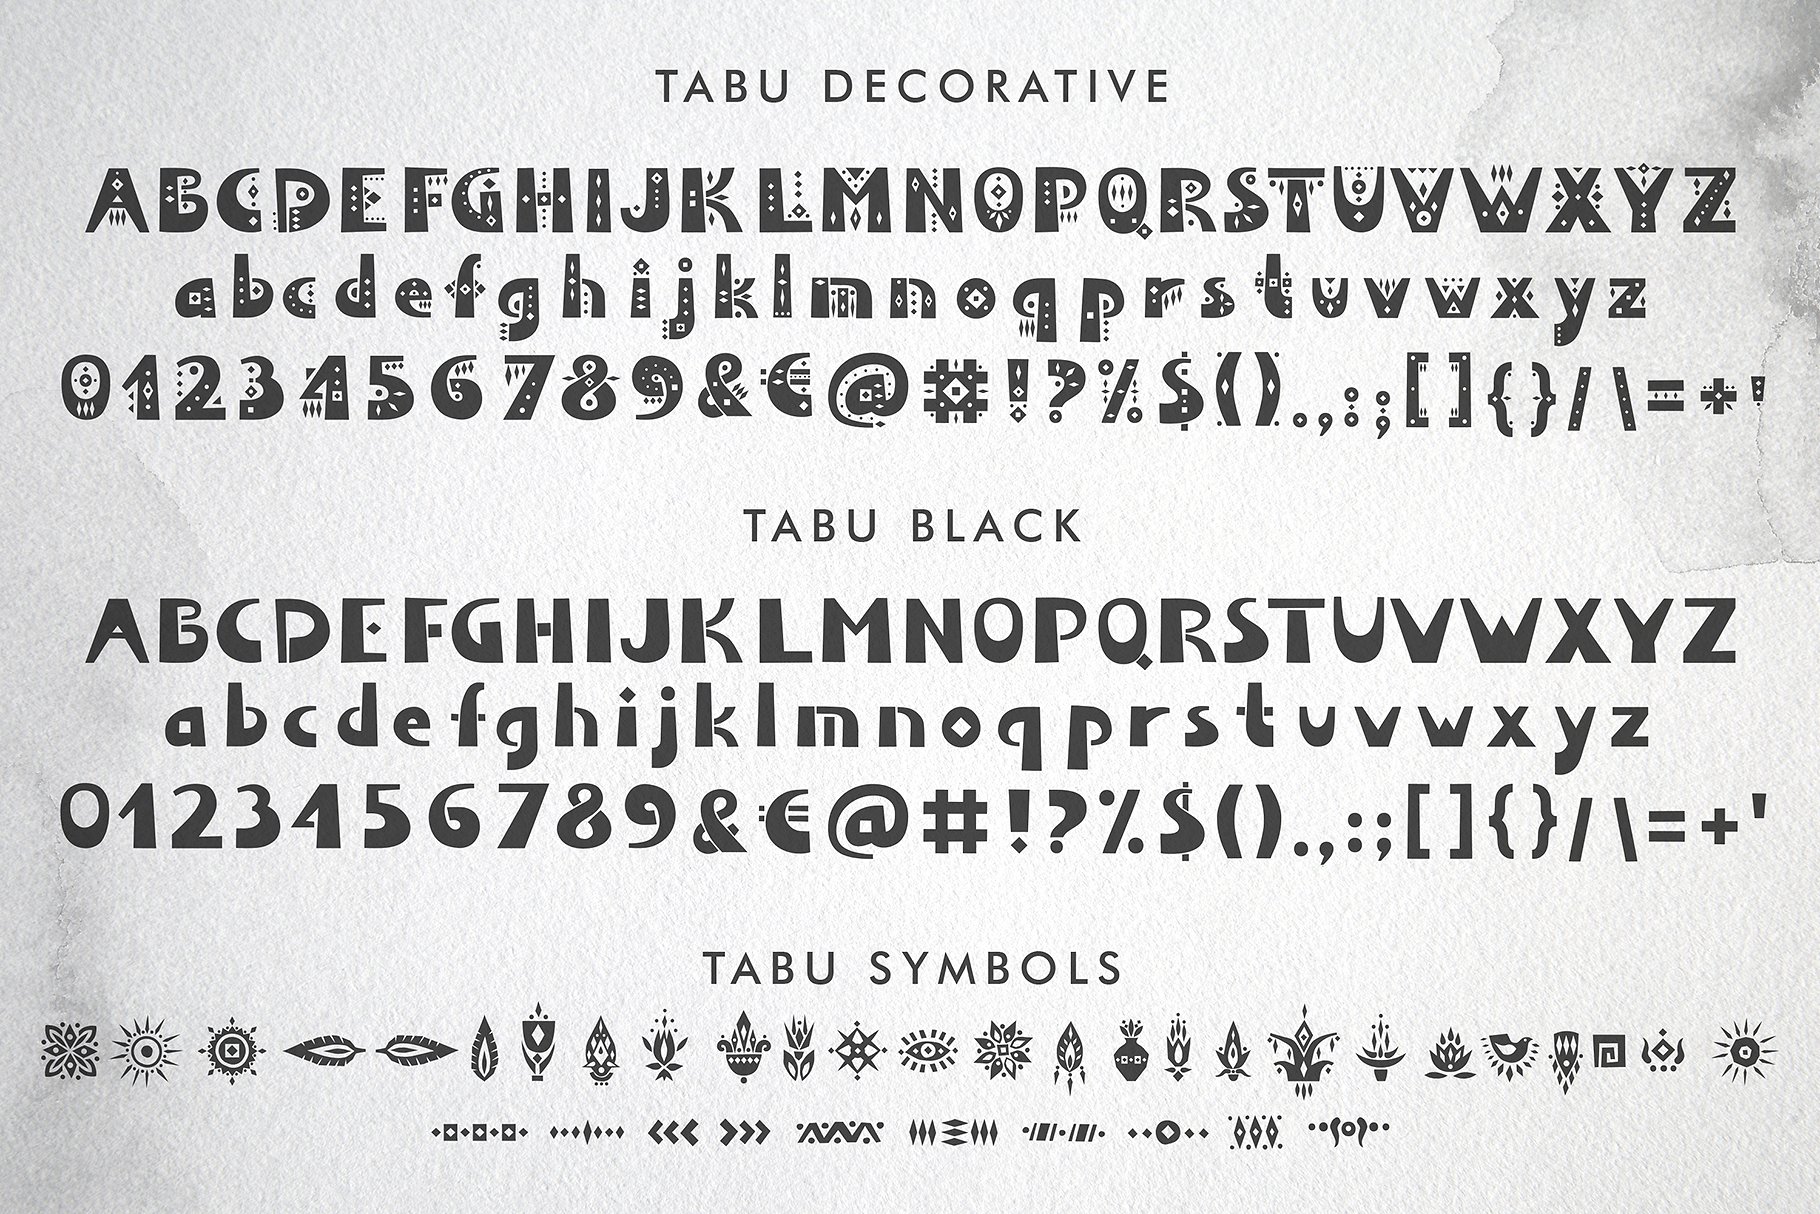 非常有民间部落气息的图案装饰英文字体 Tabu - Trib